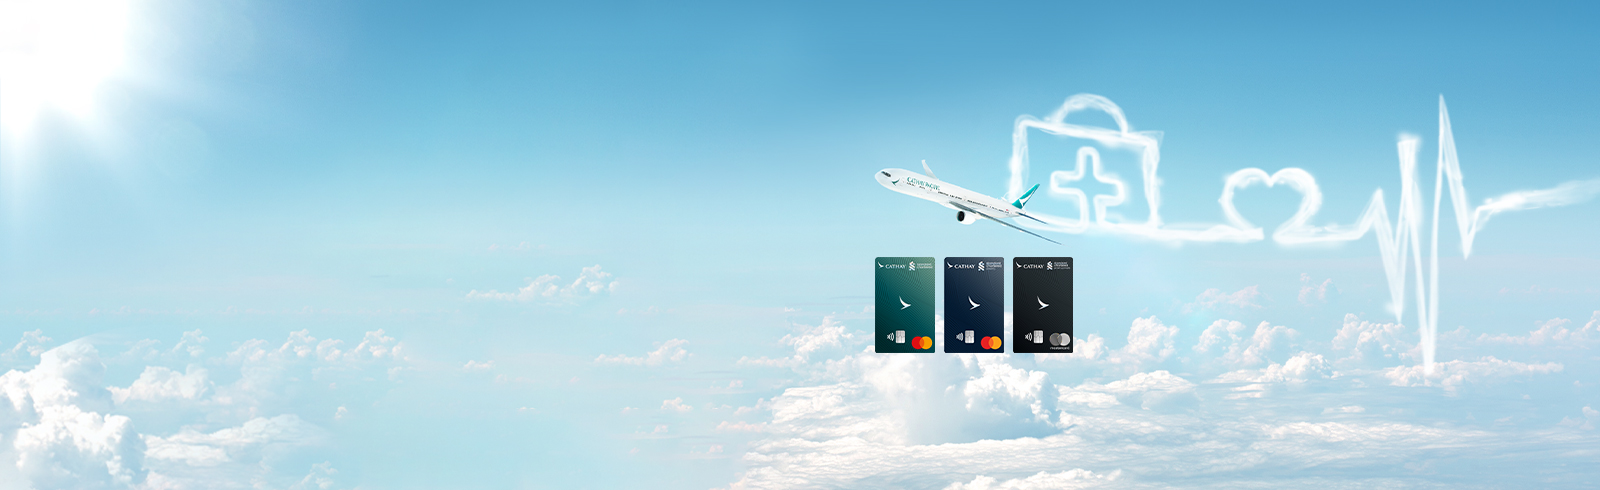 飛機與雲海, 用於推廣國泰Mastercard與卓健eShop的優惠